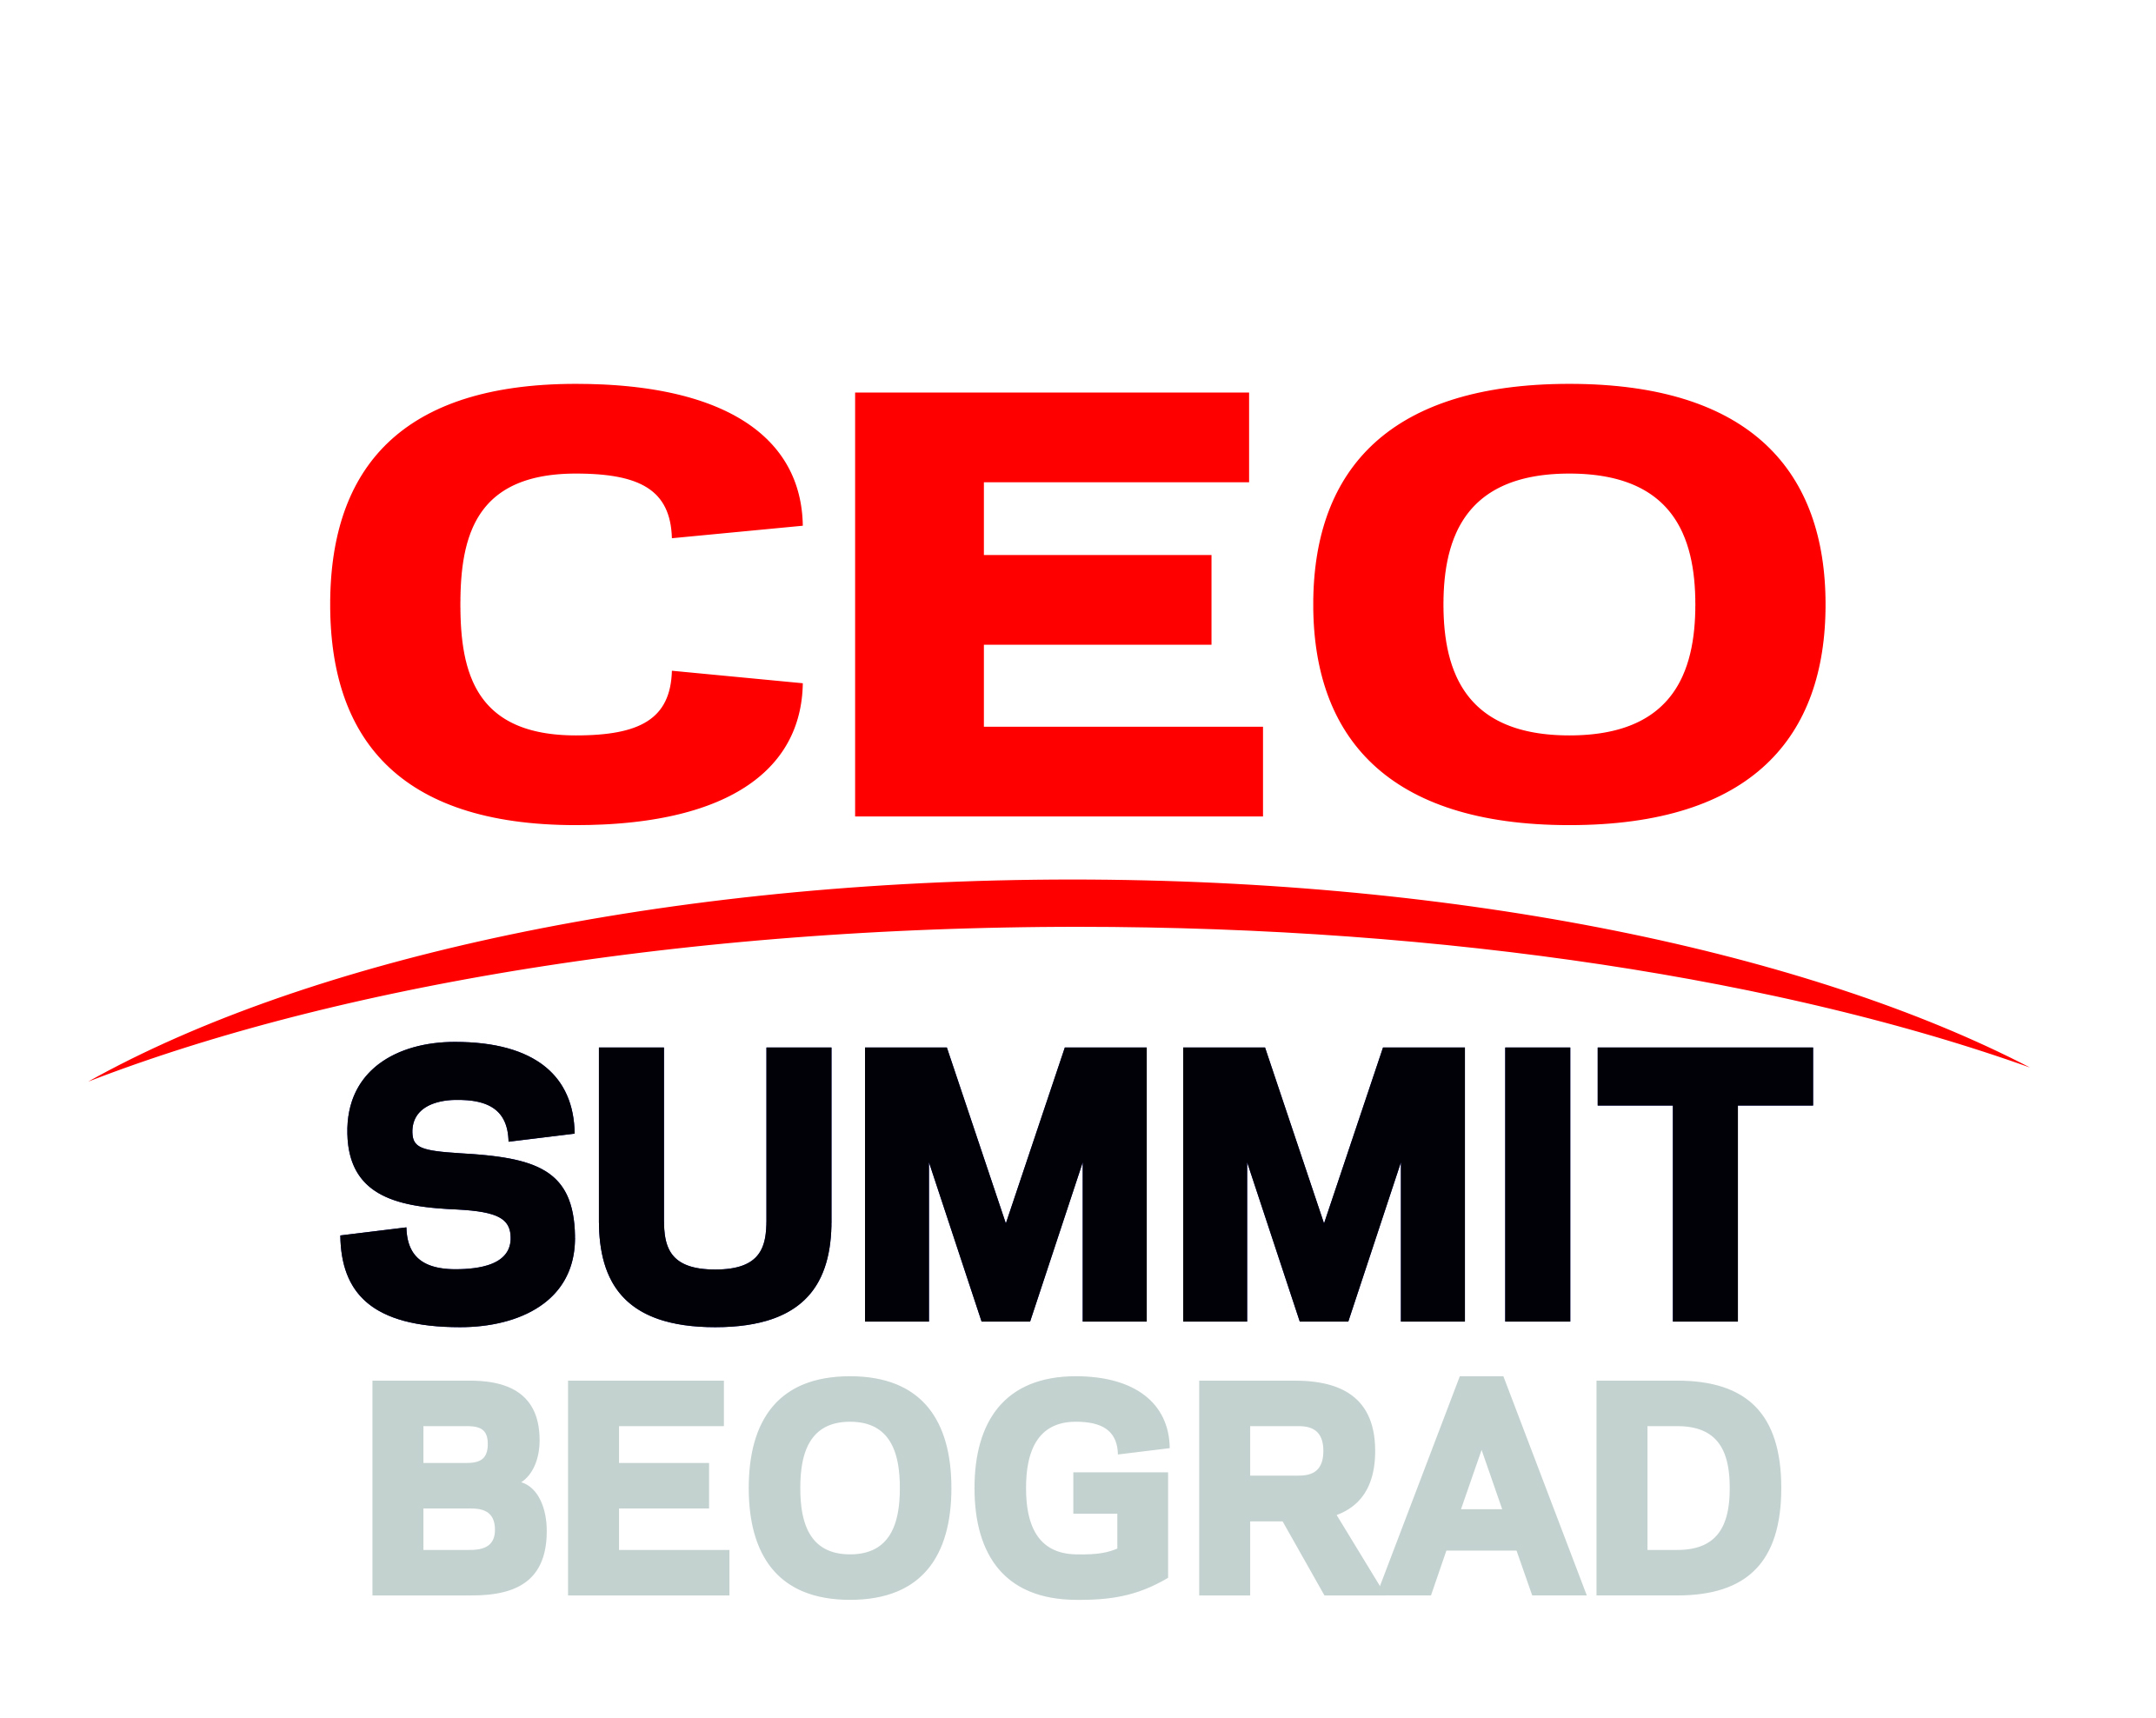 CEO SUMMIT BEOGRAD LOGO.jpg